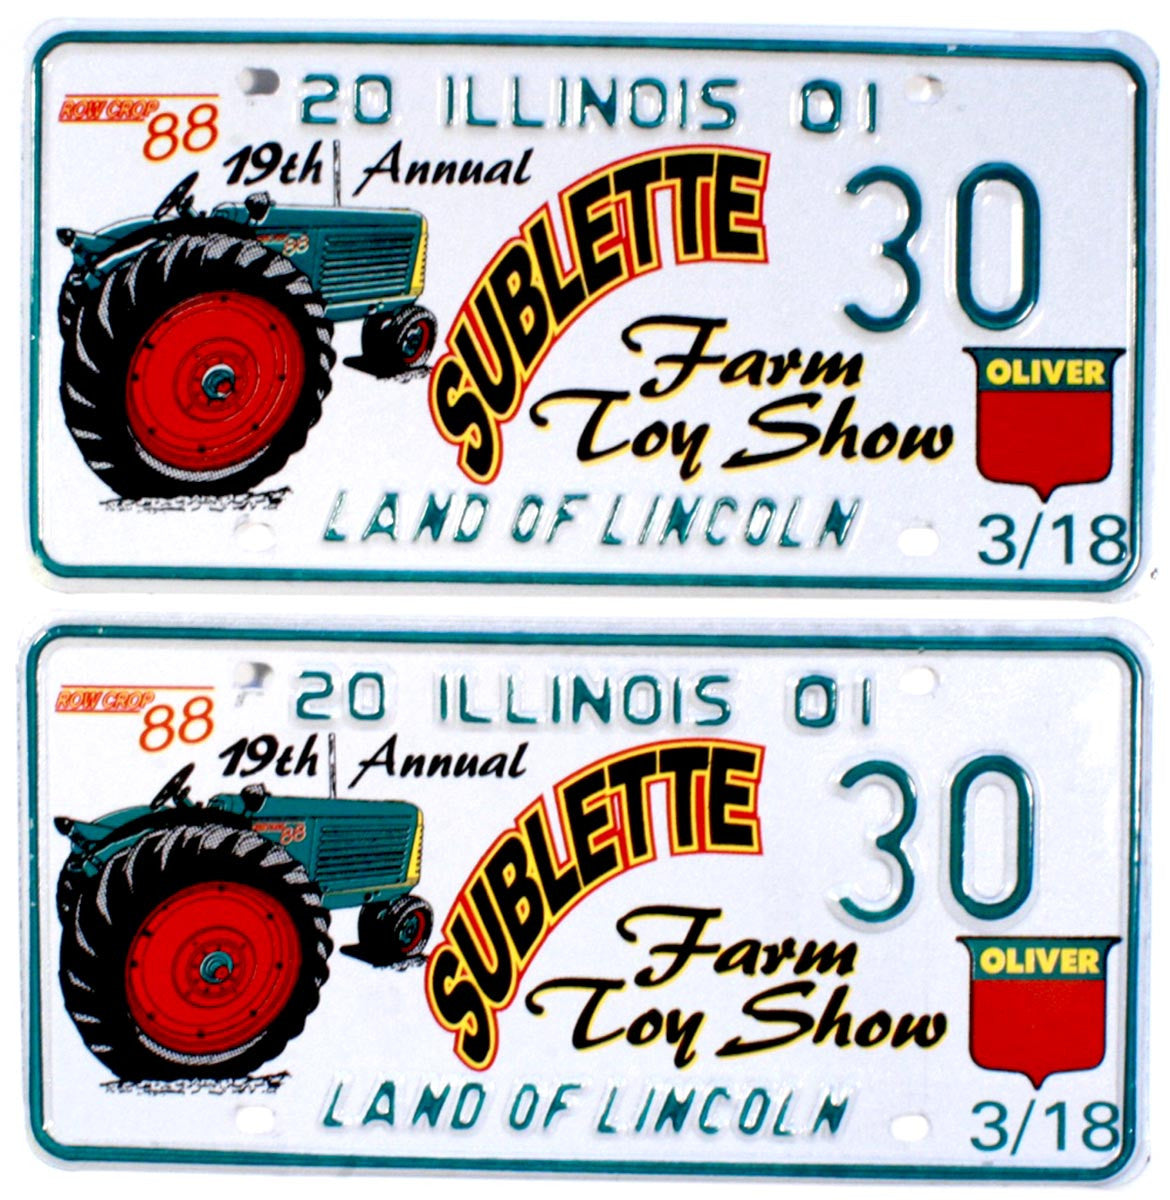 2001 Illinois Farm Toy Show License